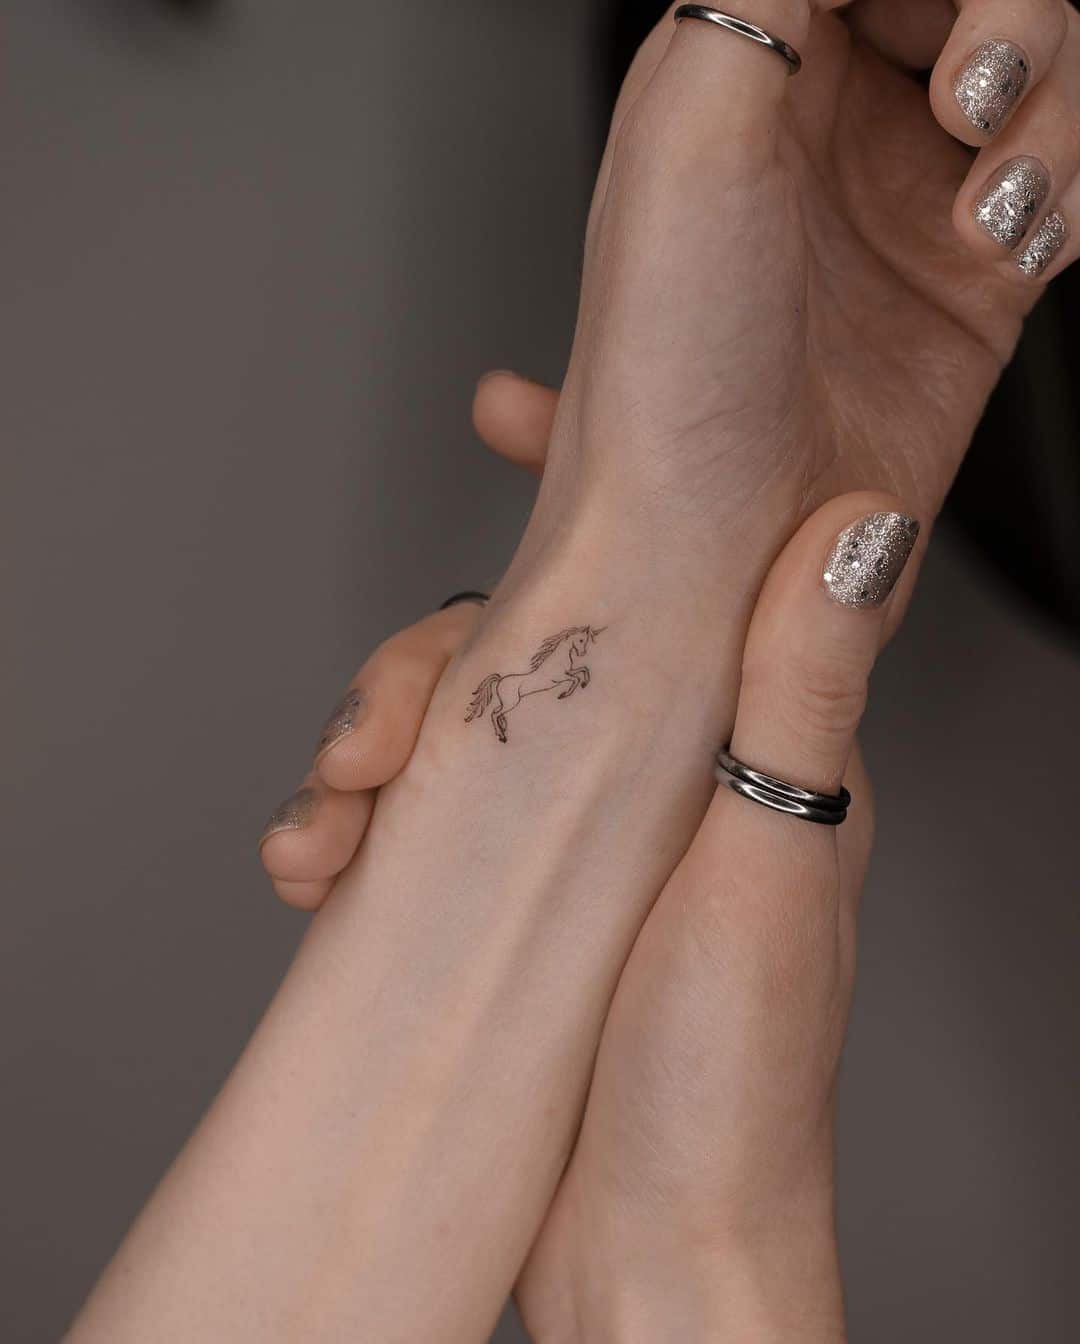 Minimalistic unicorn tattoo on rist by zd.tat